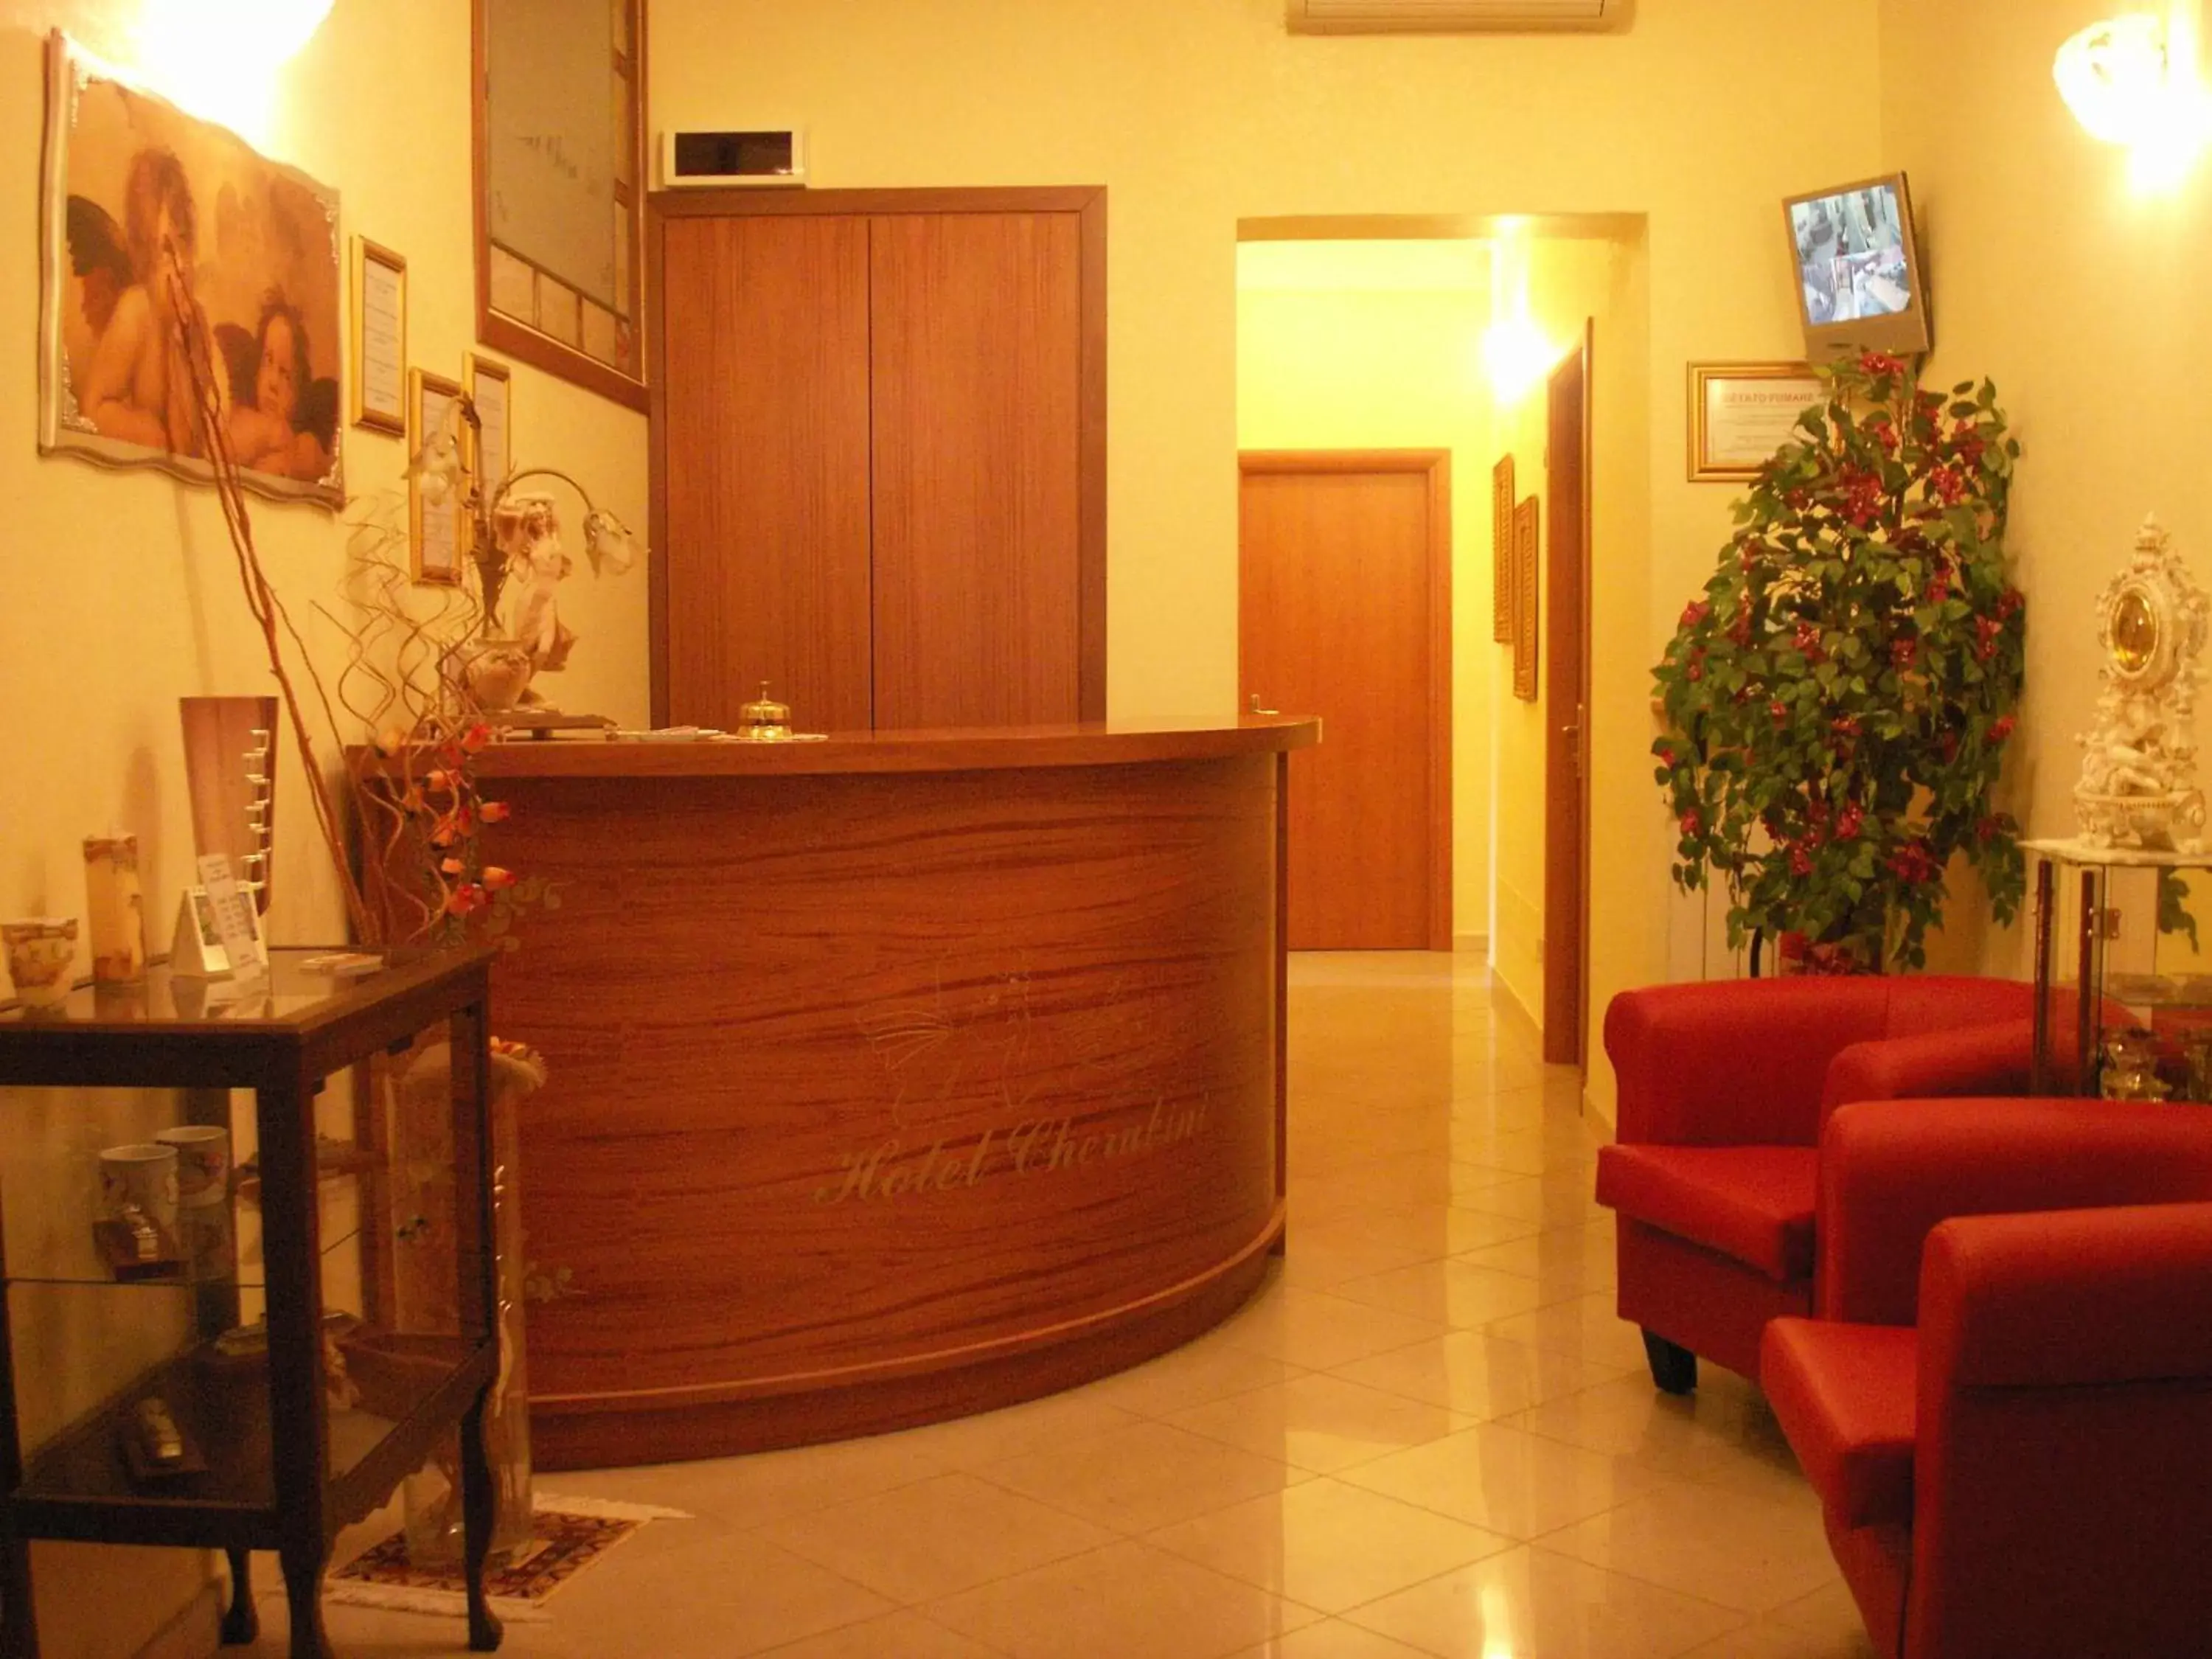 Lobby or reception, Lobby/Reception in Hotel Cherubini